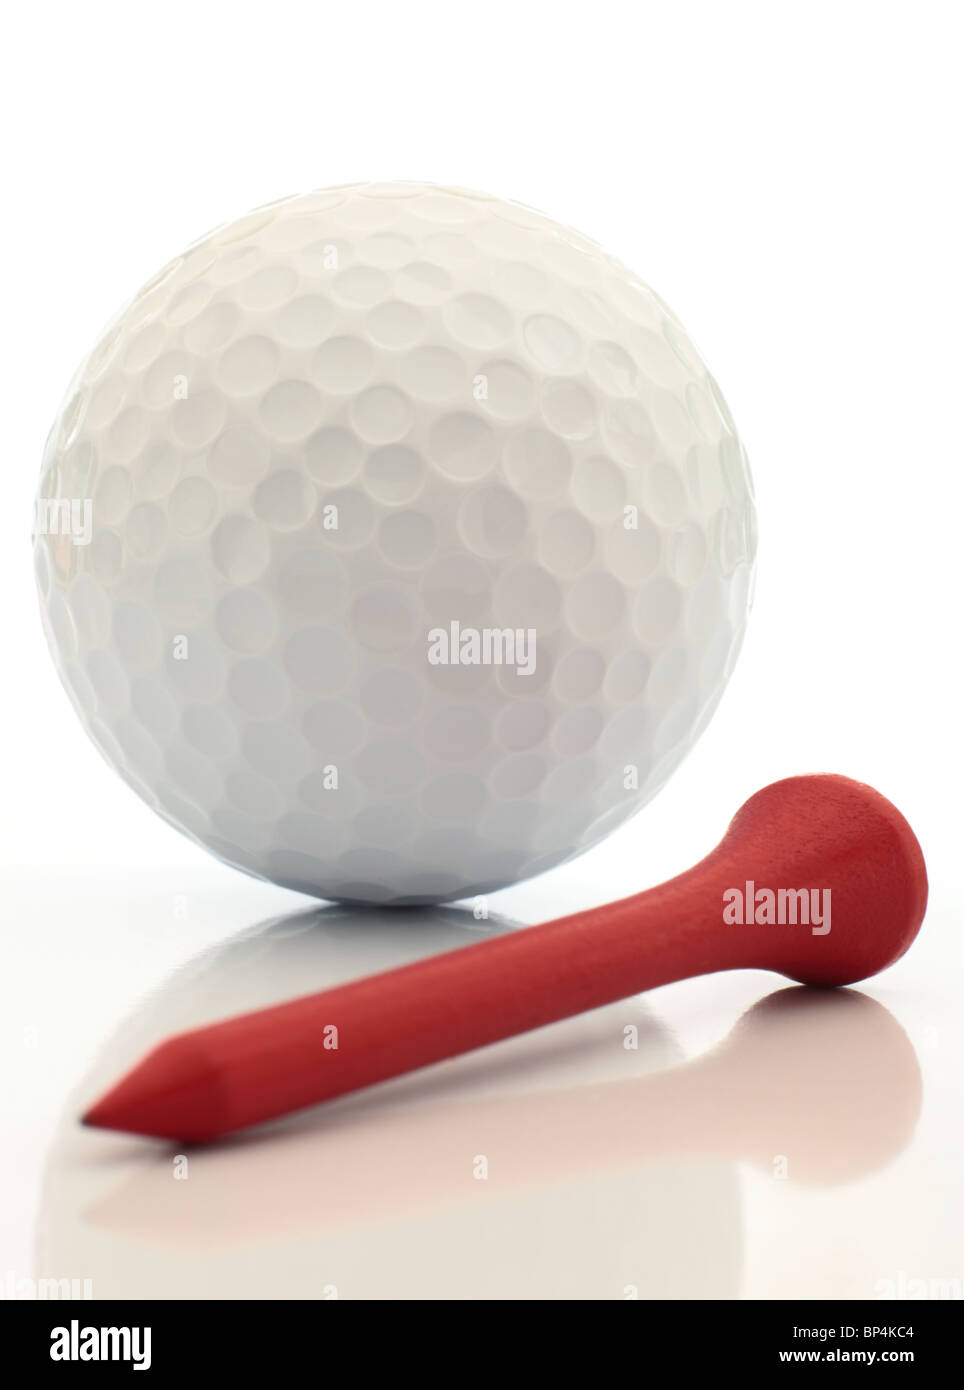 Ein Golfball und roten Tee hautnah reflektierte. Dieses Bild ist exklusiv bei Alamy. Stockfoto